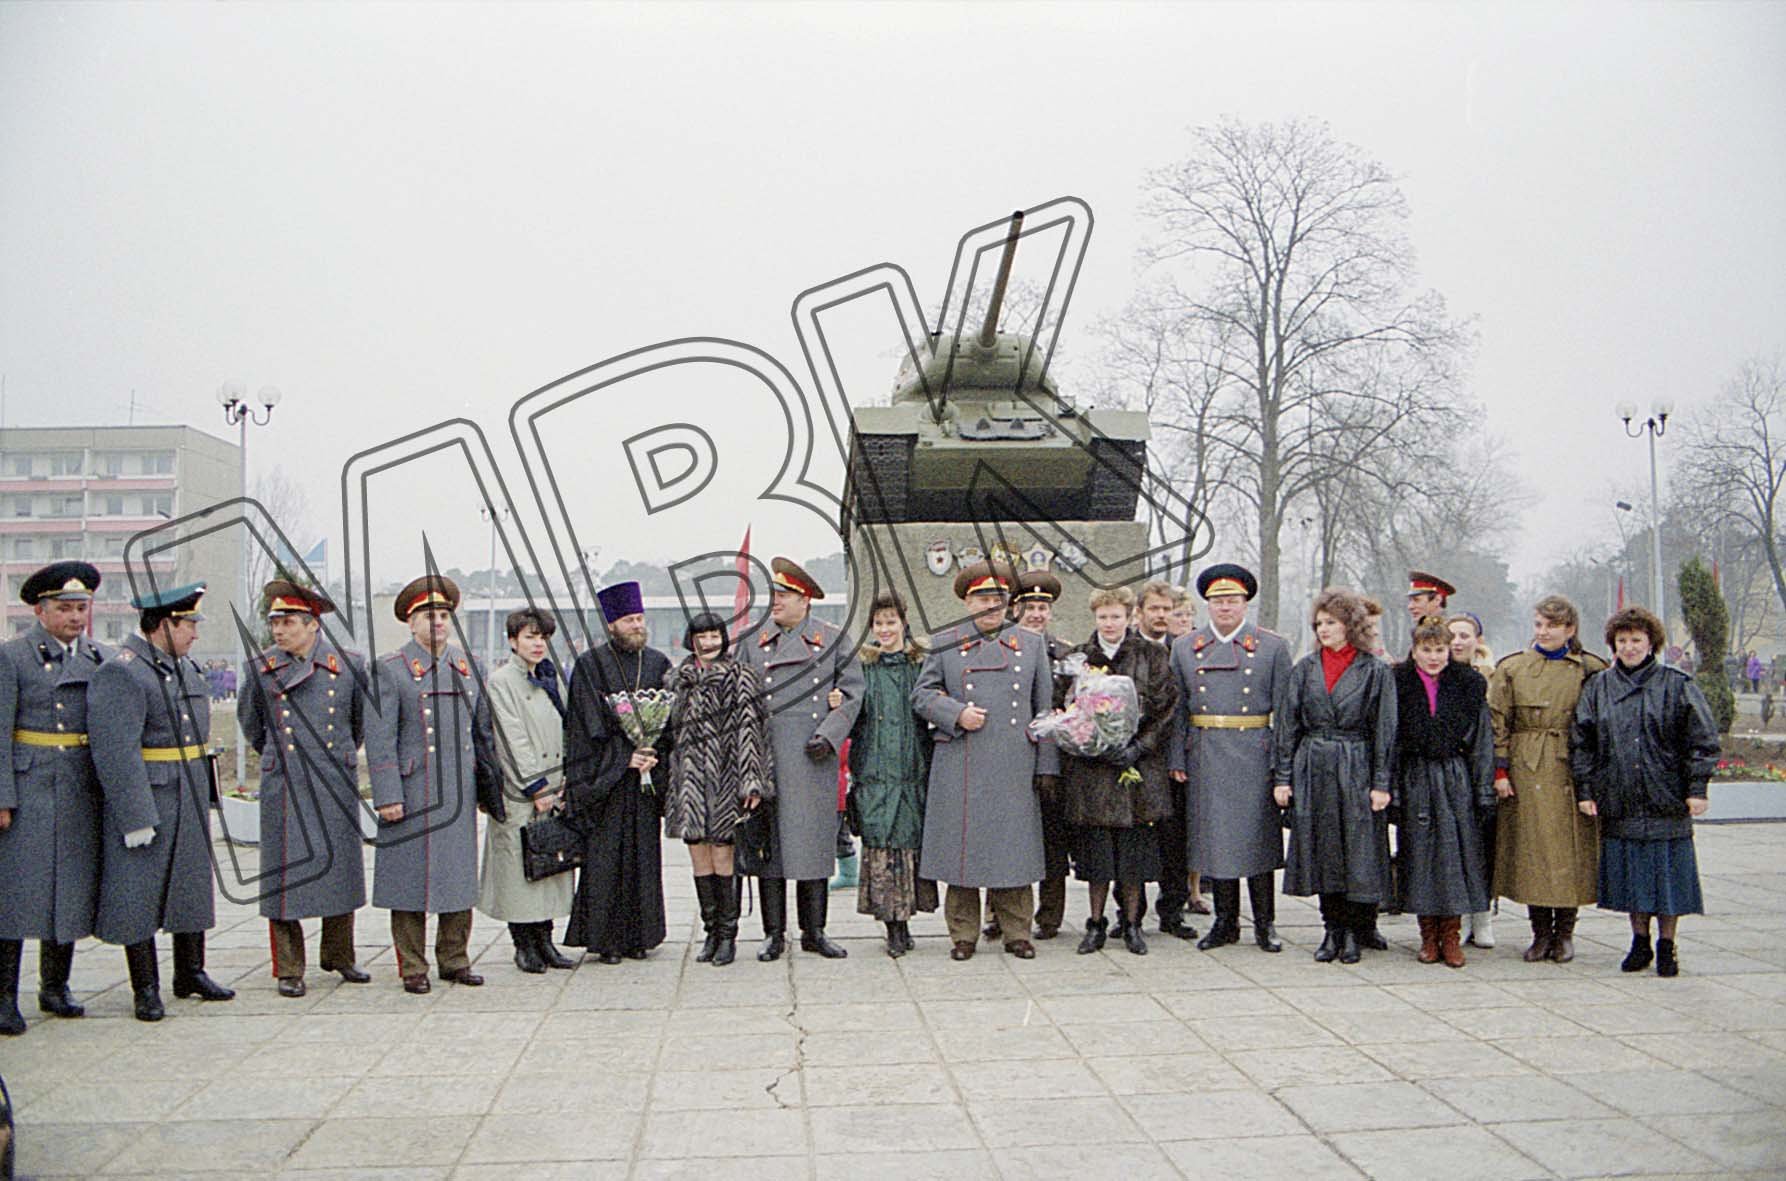 Fotografie: Generaloberst Burlakow vor dem Panzerdenkmal der WGT in Altengrabow, 26. Februar 1993 (Museum Berlin-Karlshorst RR-P)